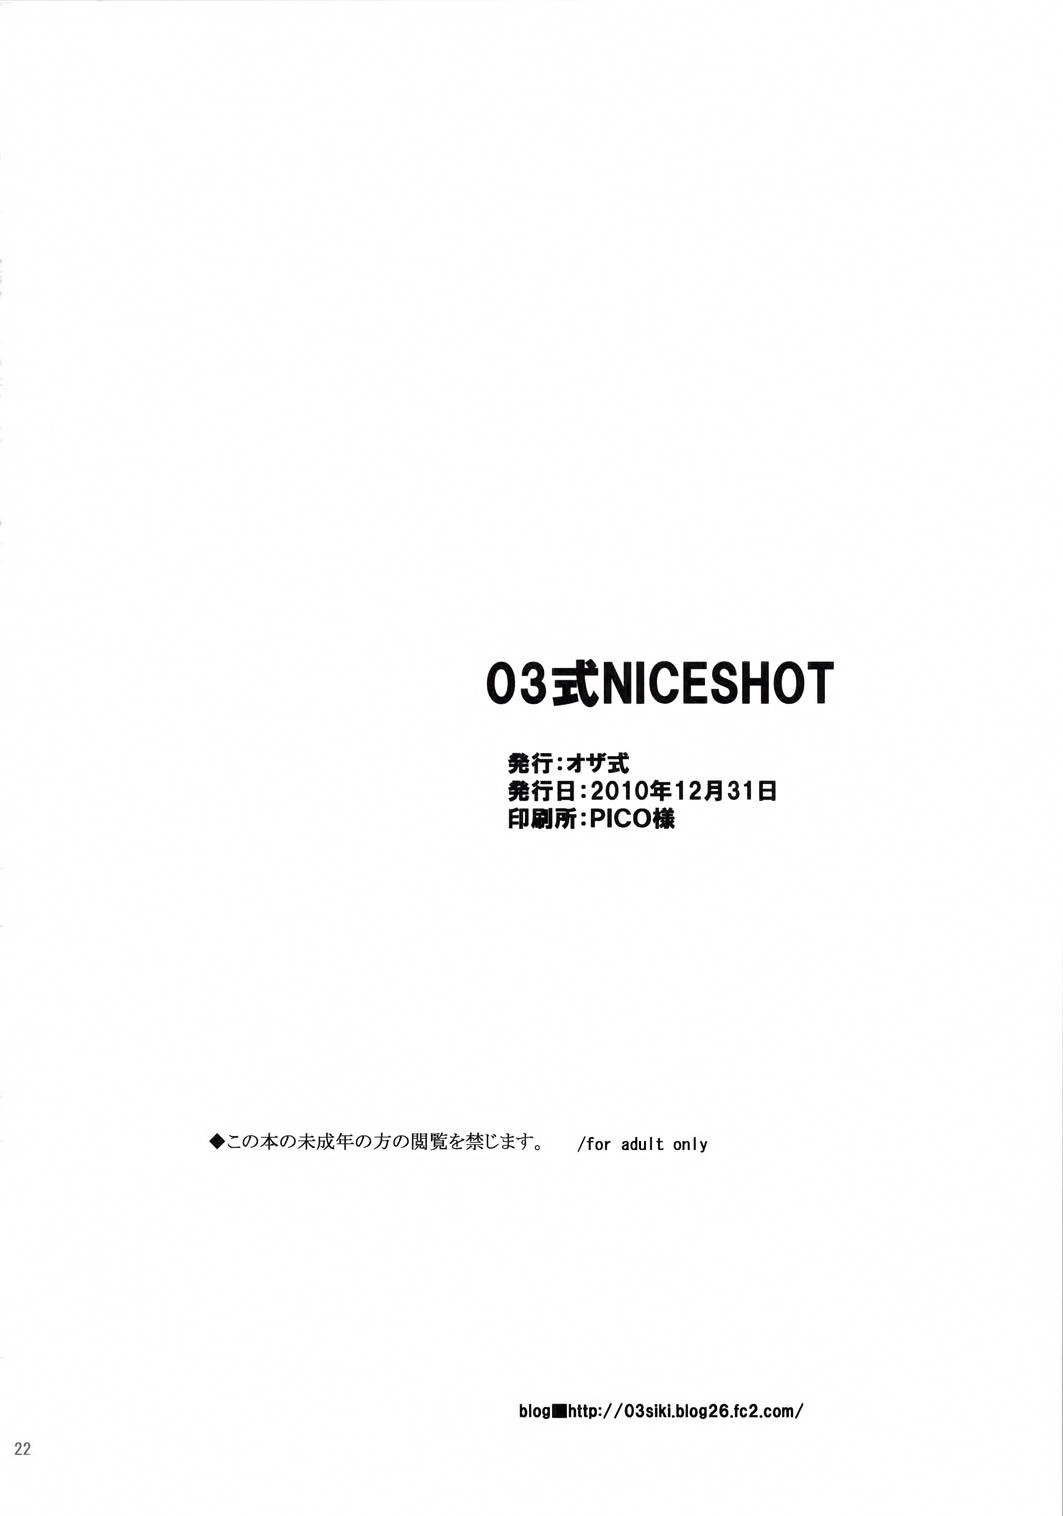 03 Shiki NICESHOT 20